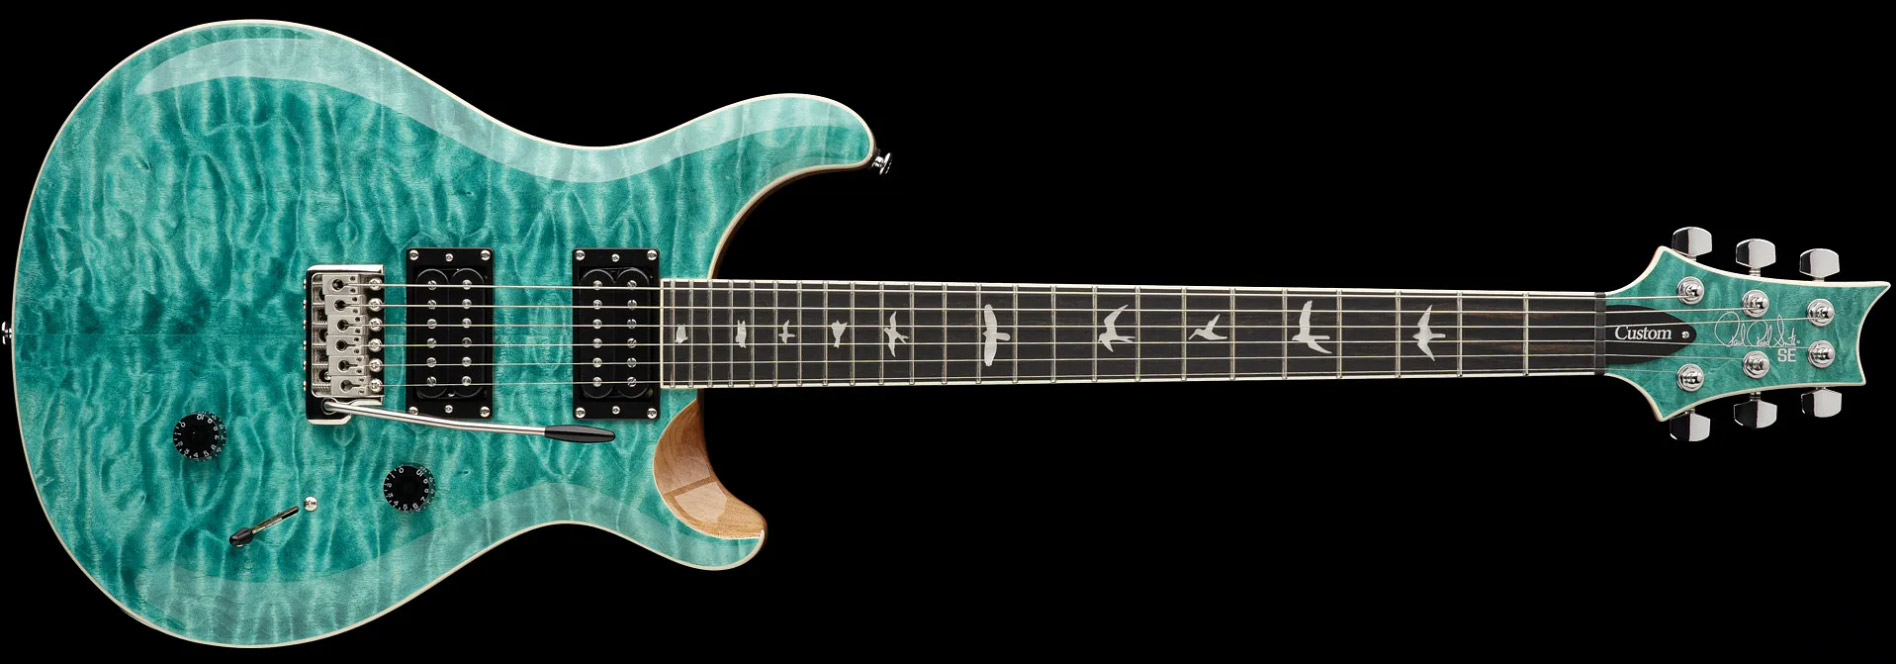 Prs Se Custom 24 Quilt 2h Trem Eb - Turquoise - Guitarra eléctrica de doble corte. - Variation 3